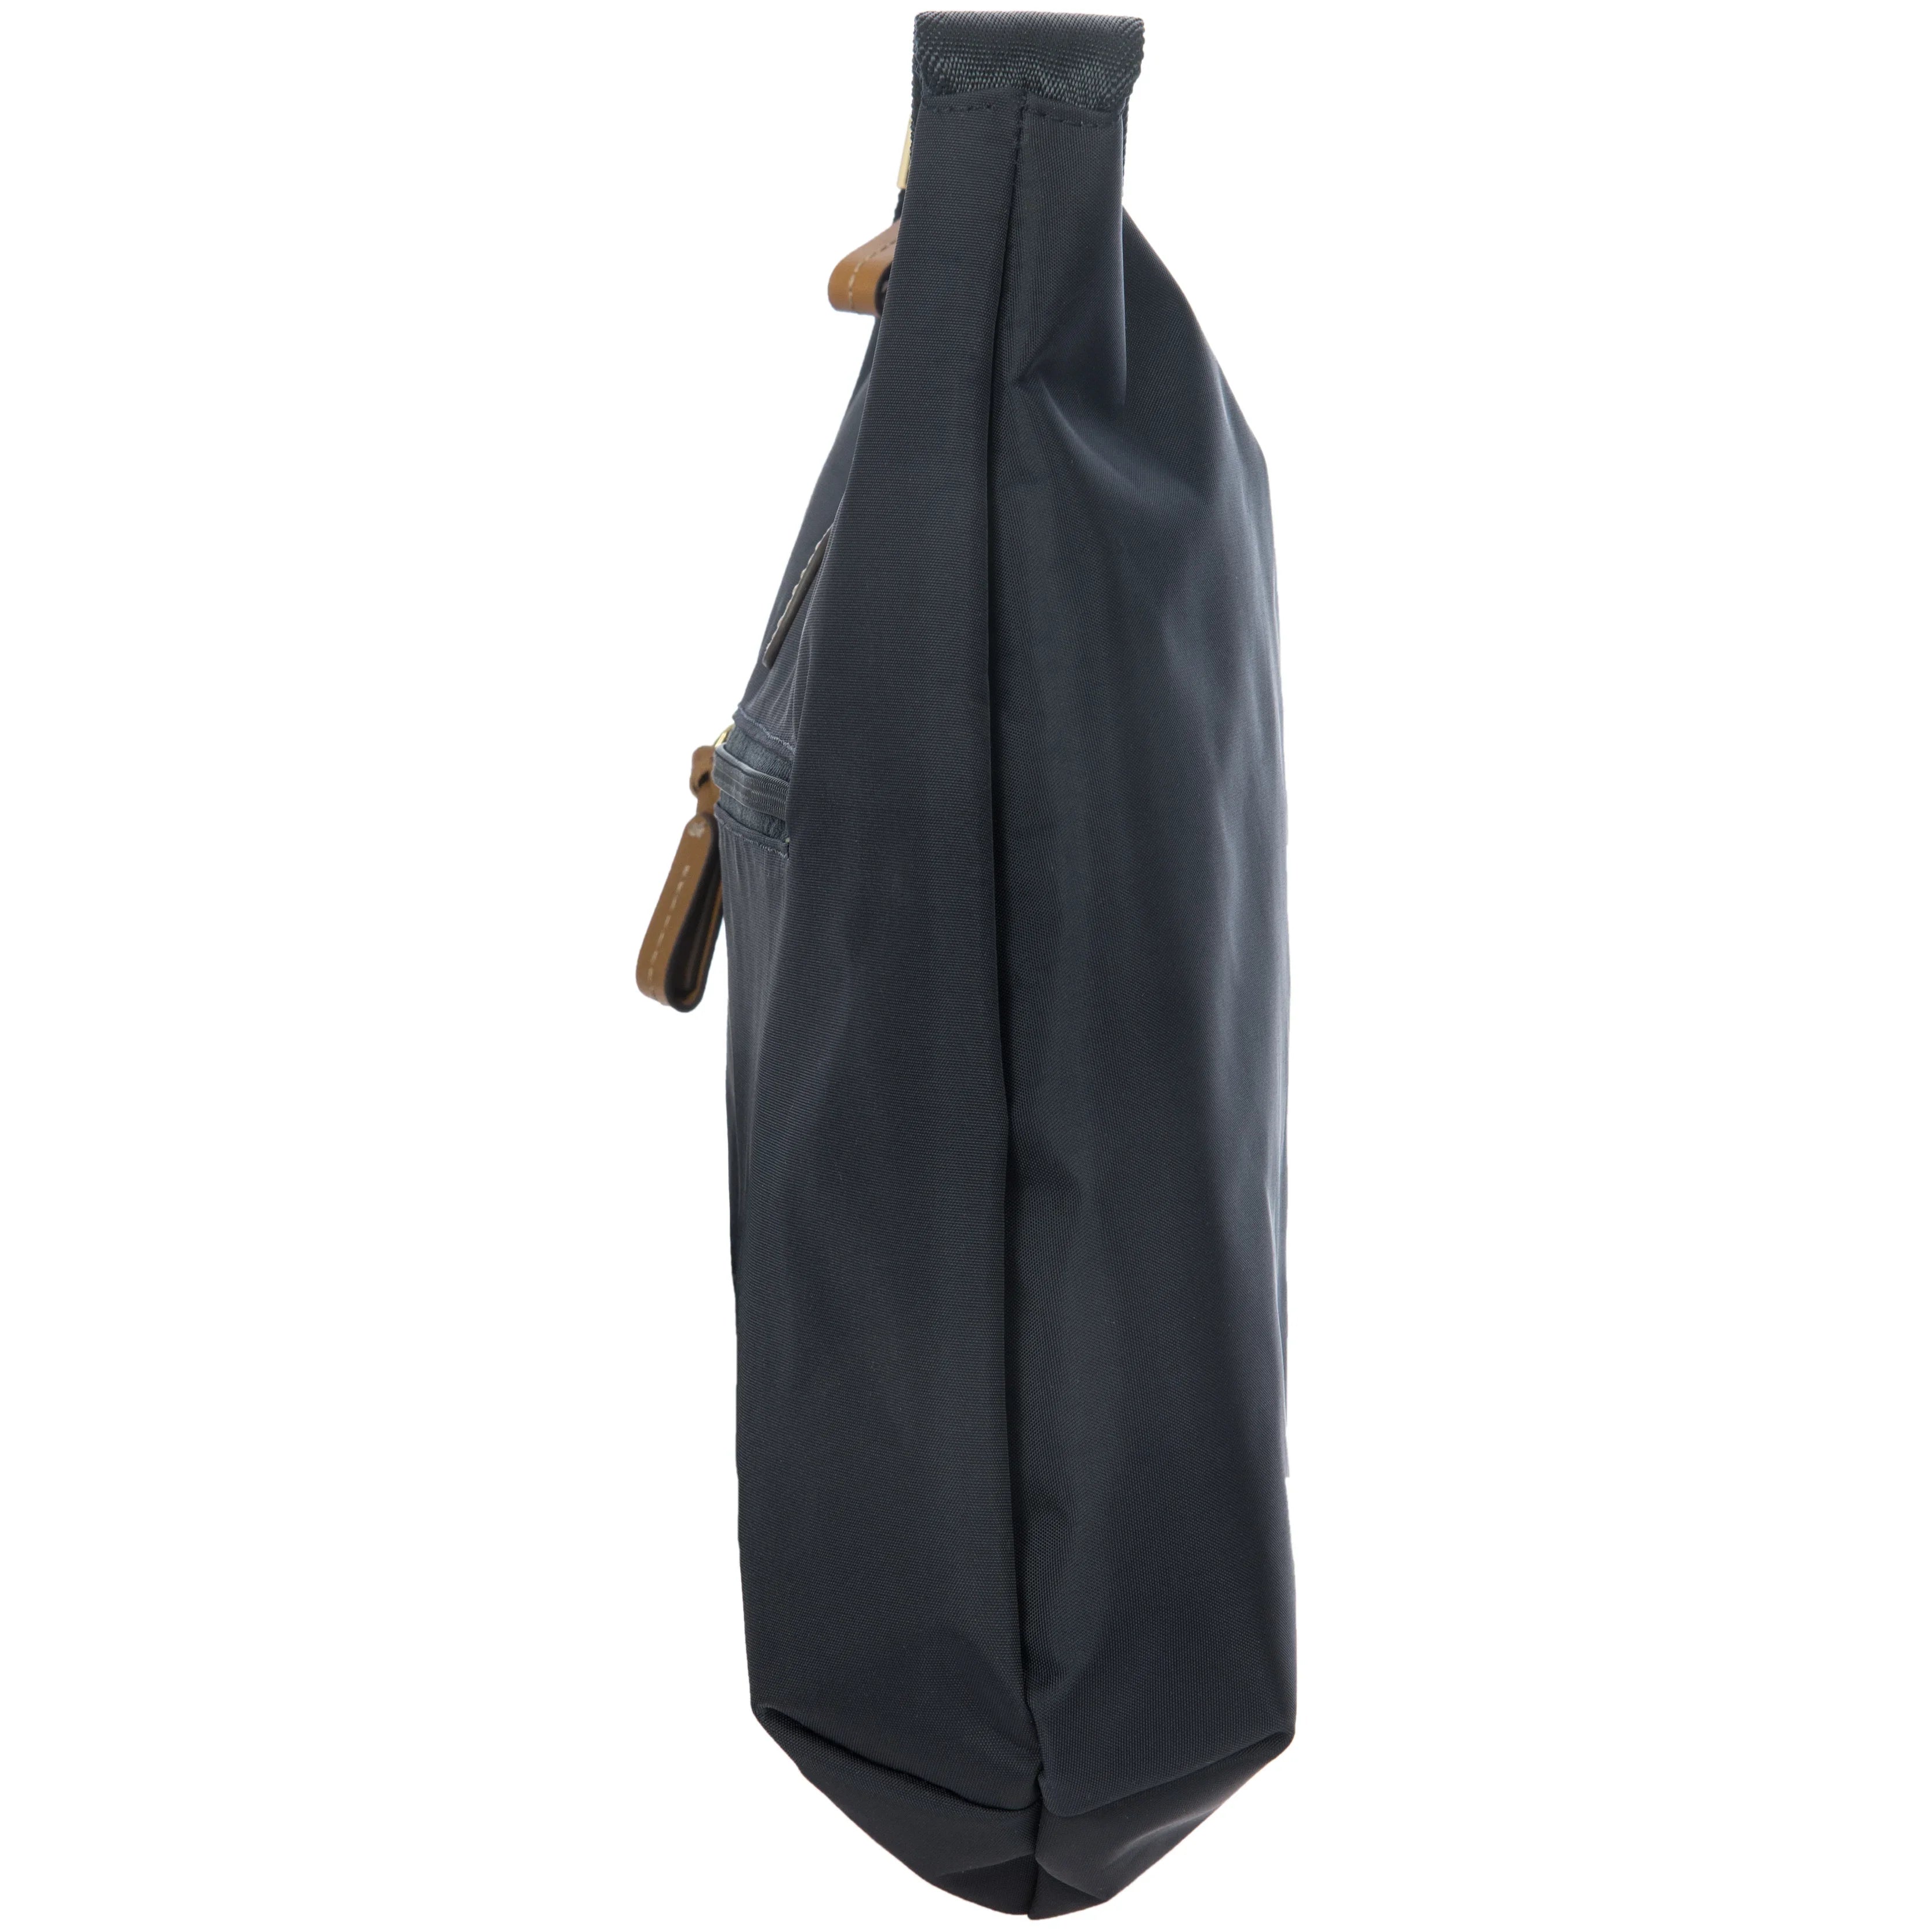 Brics X-Bag shoulder bag 38 cm - Silver